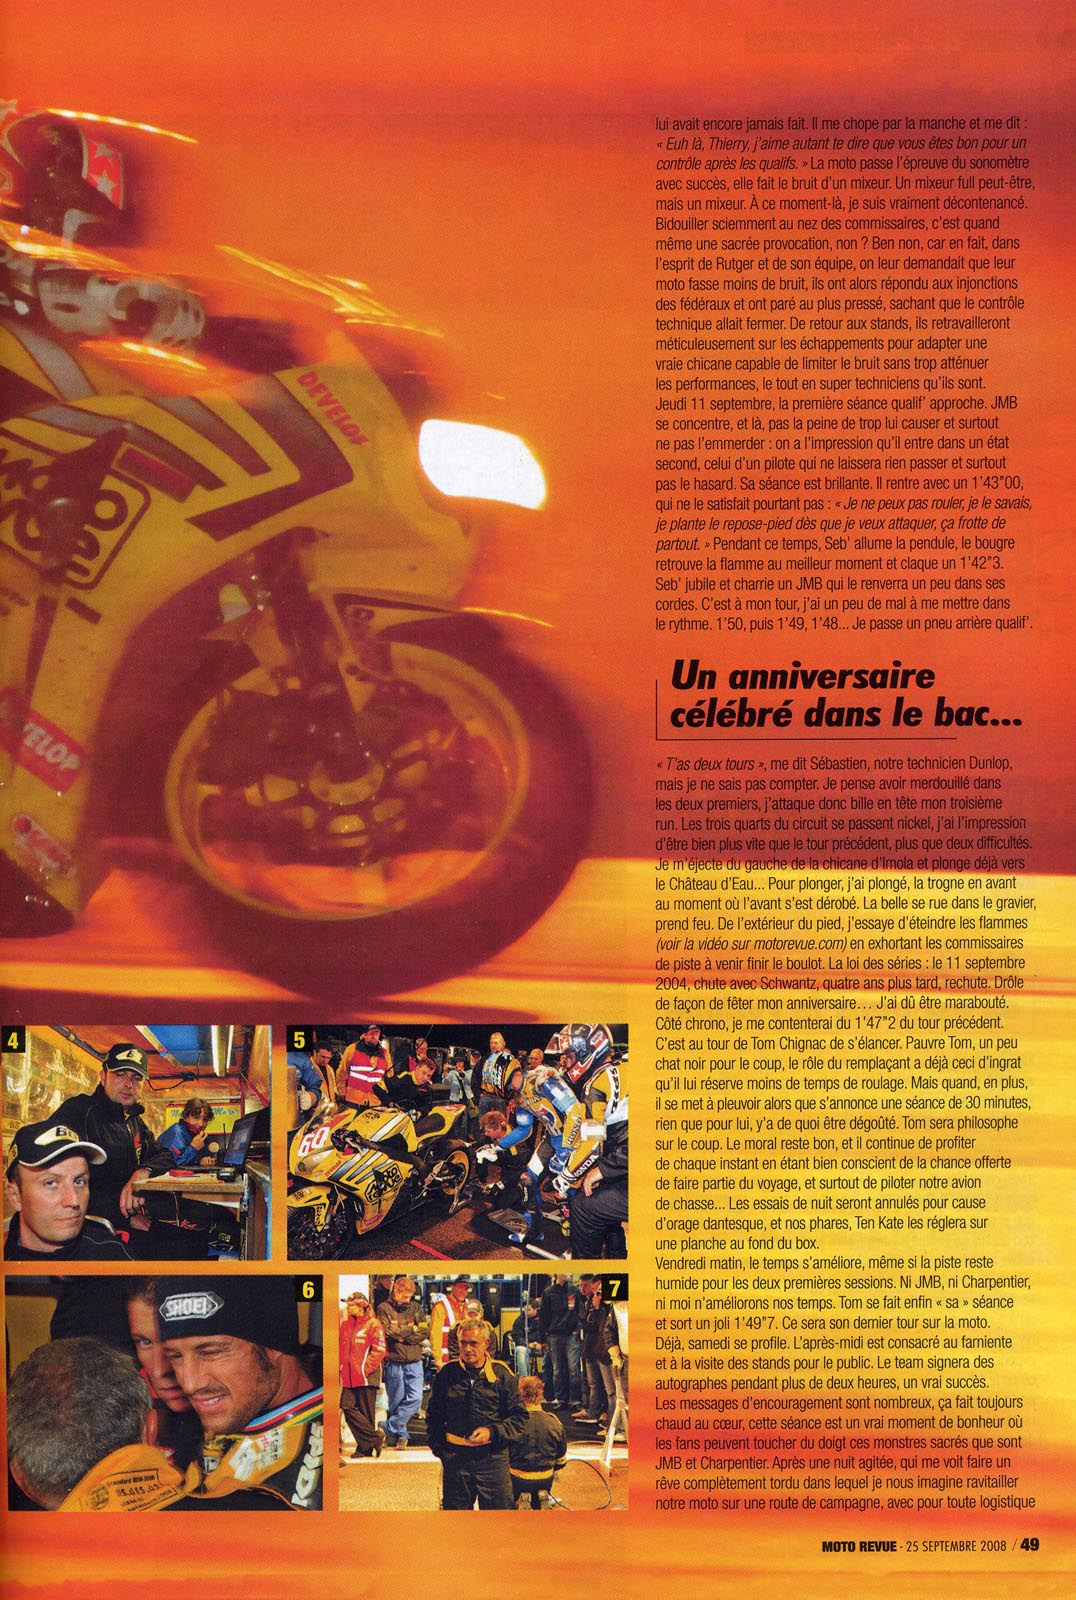 La page 49 du Moto Revue 3825 où on trouve un excellent papier de Thierry Traccan sur cette épreuve du Bol d'Or 2008